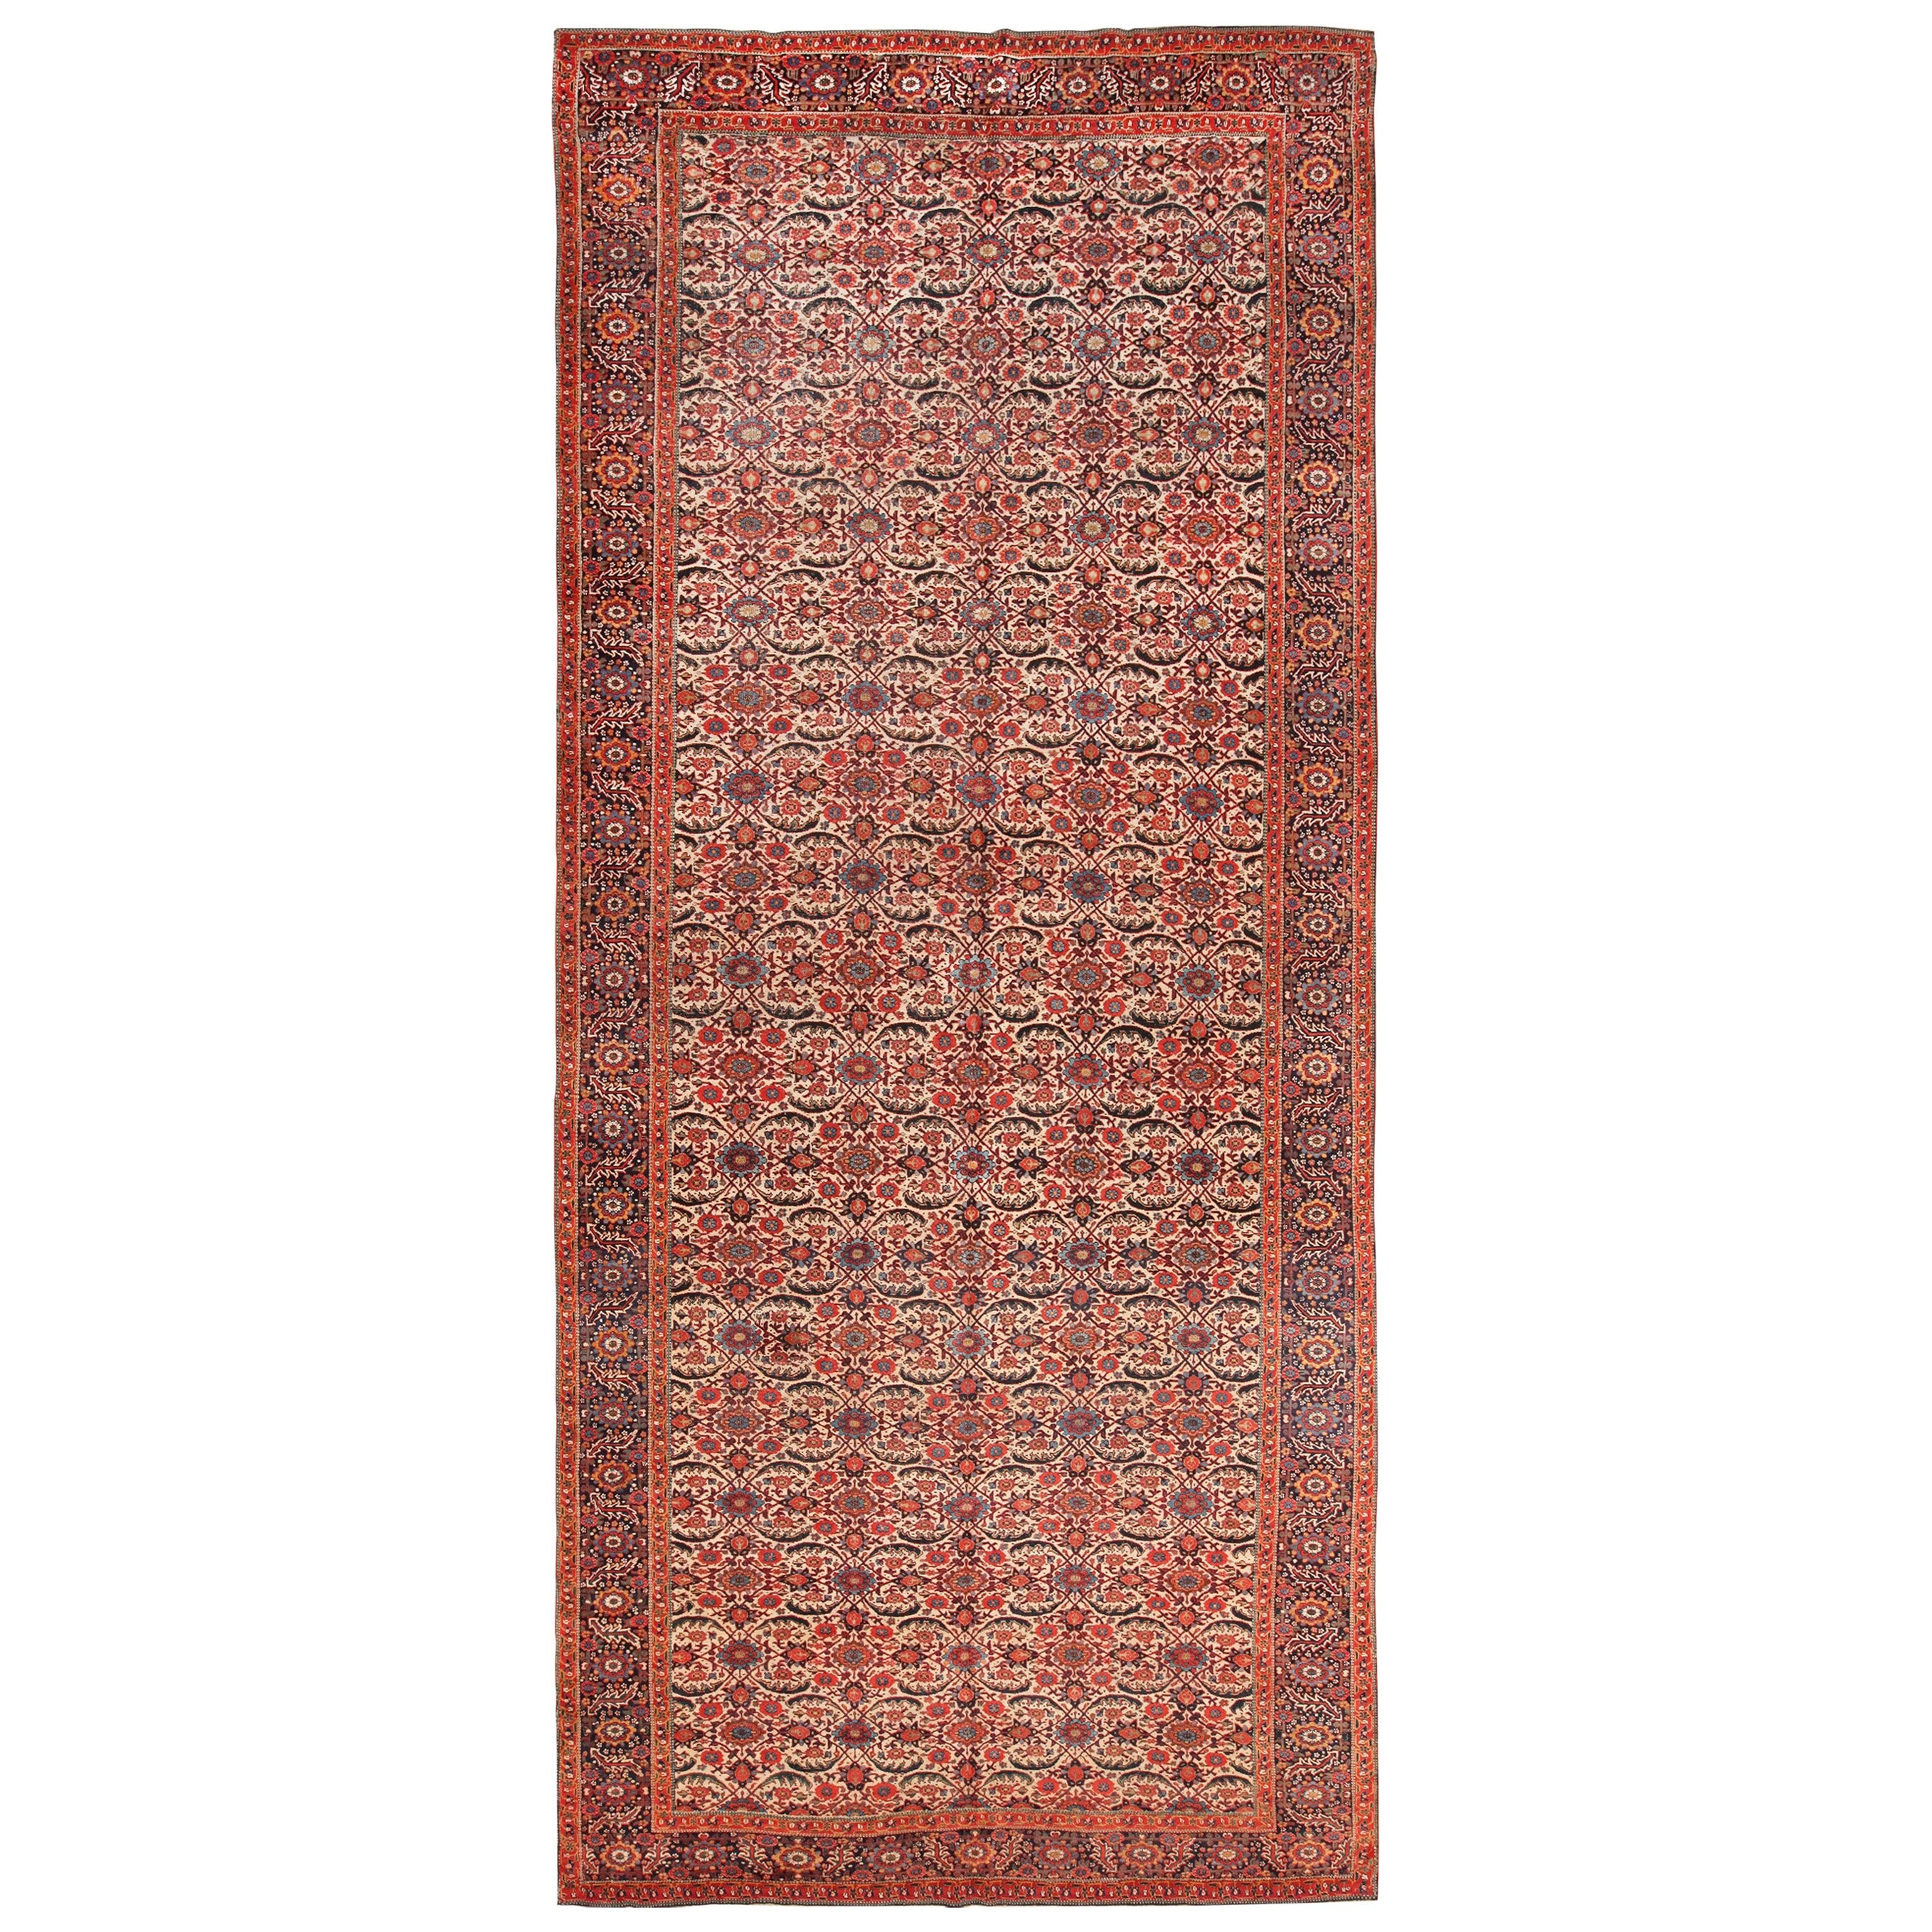 Antique Persian Bidjar Rug. 8 ft. 7 in x 19 ft. 6 in